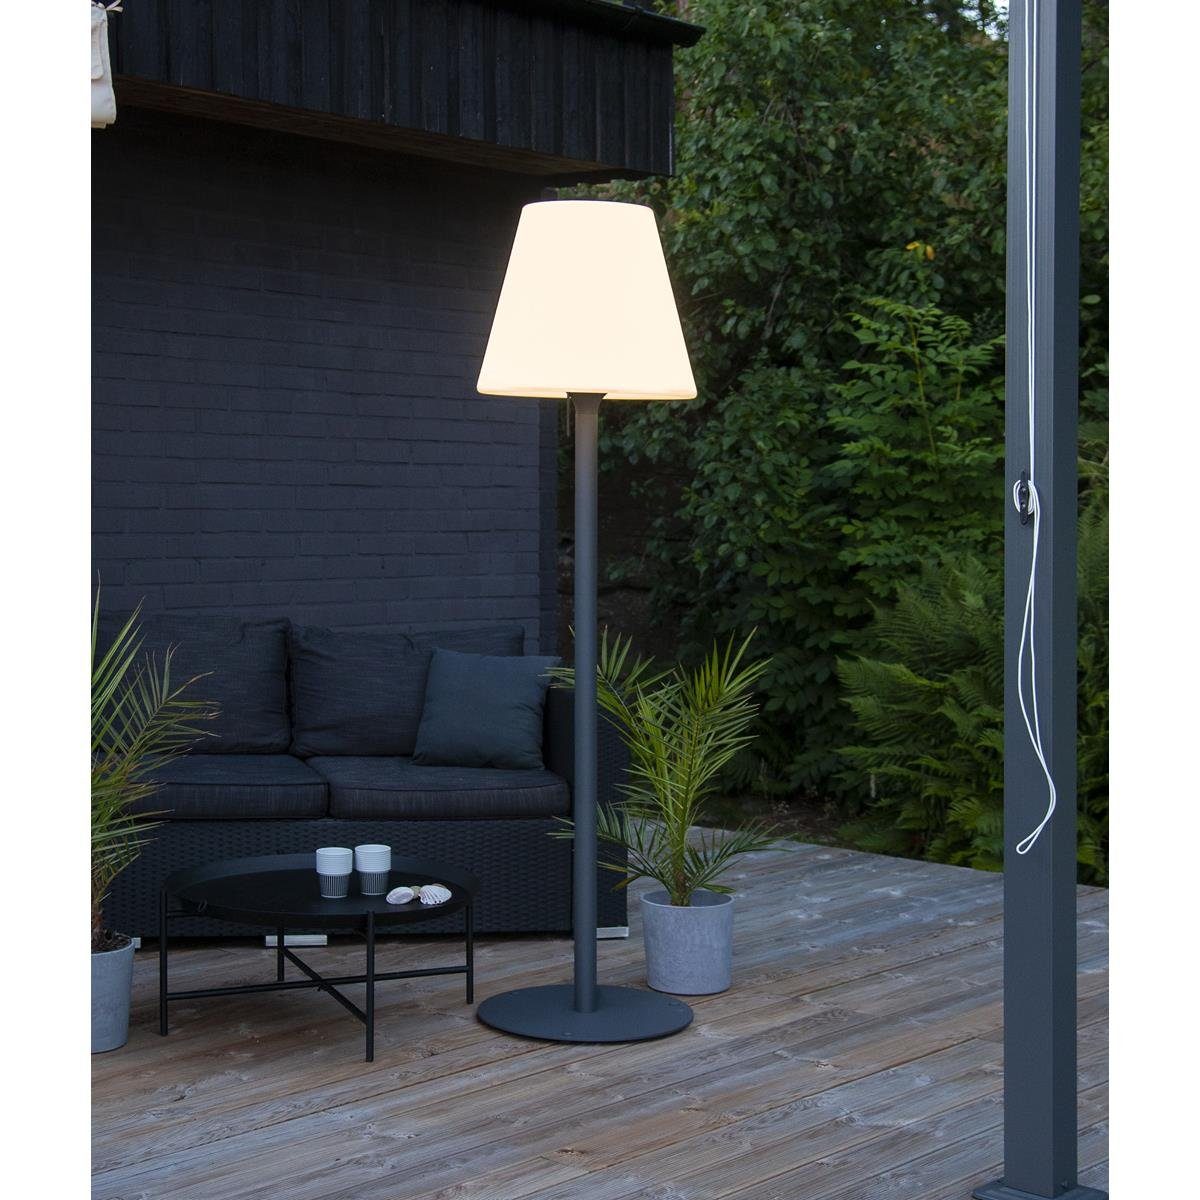 STAR TRADING LED Außen-Stehlampe Garten Beistelllampe/Stehlampe 187cm  weißer Schirm 50cm E27 Fassung